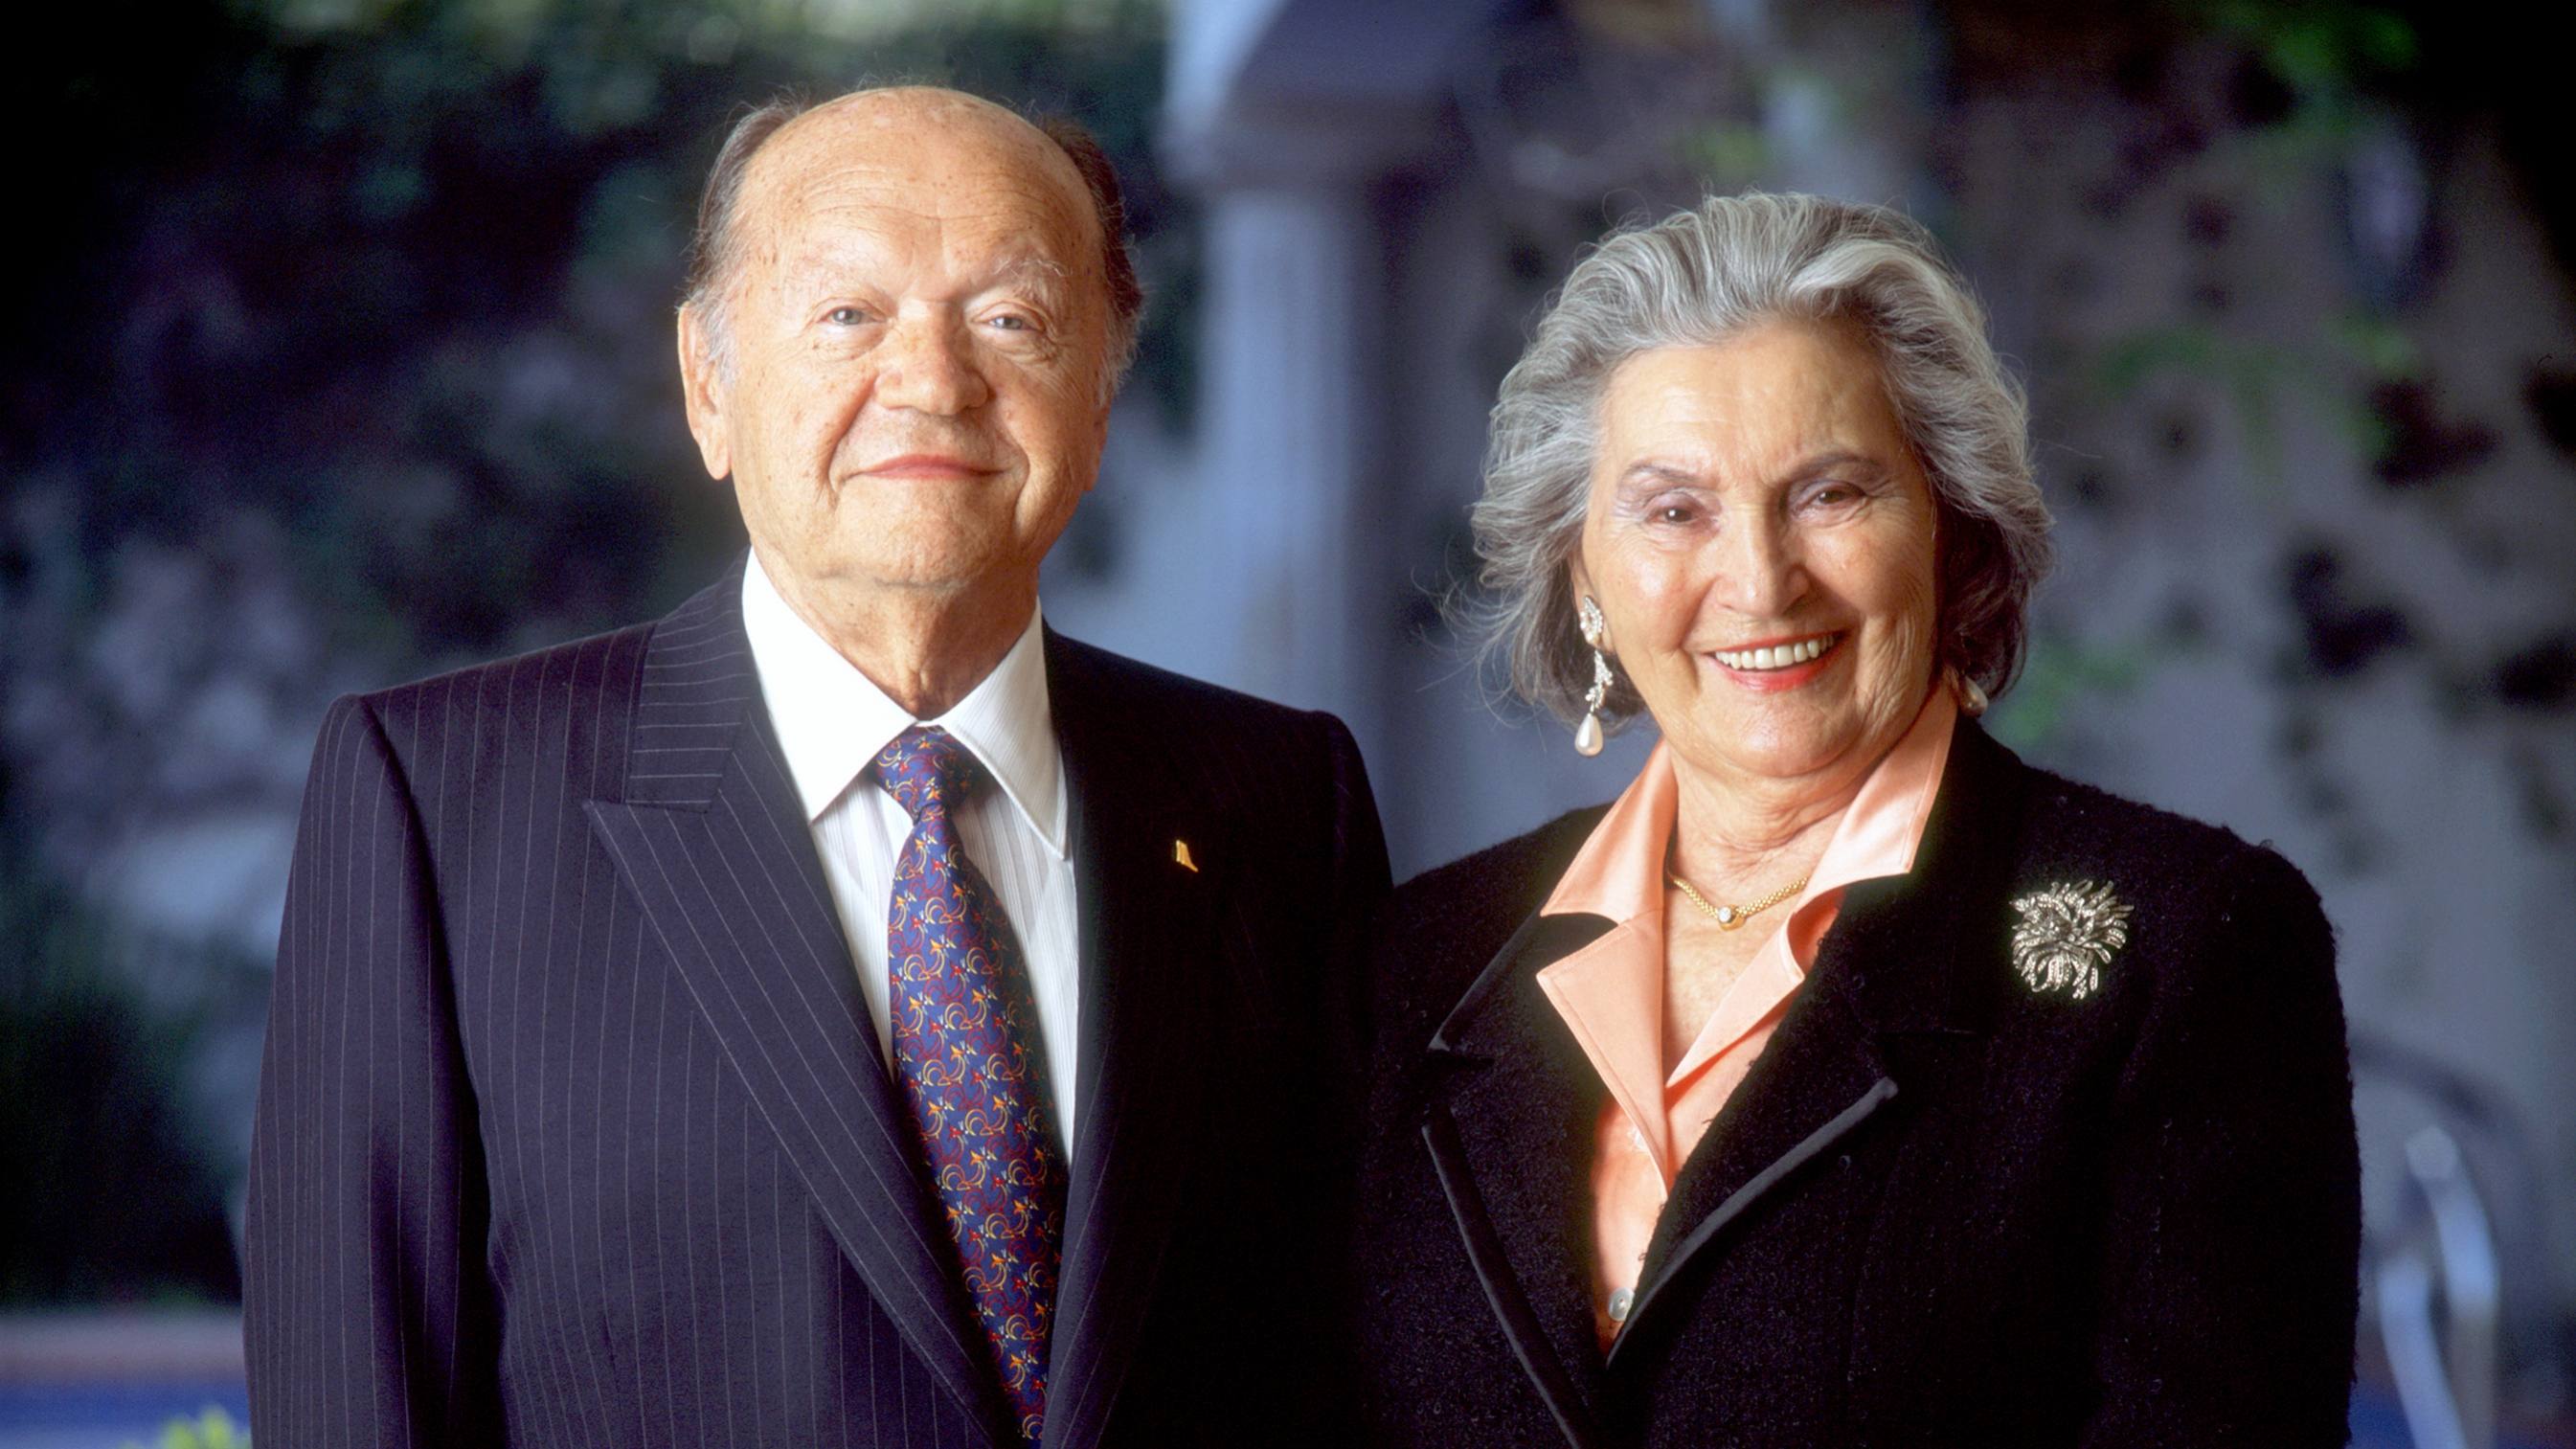 Mr. and Mrs. Leslie Gonda smiling in formal portrait